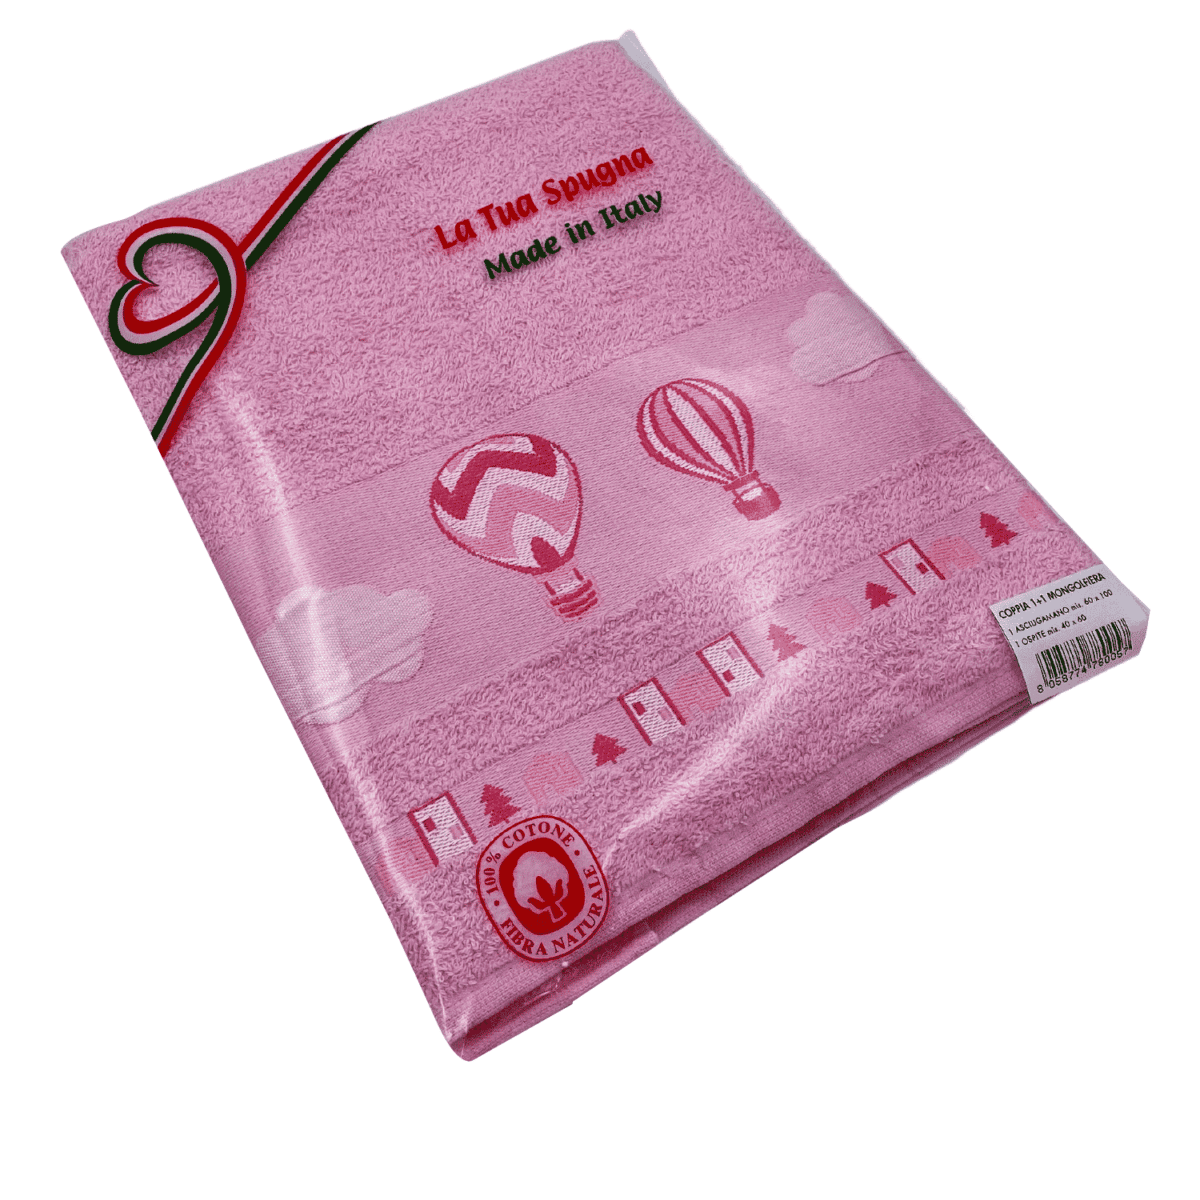 confezione-Set-1+1-mongolfiere-rosa-spugna-fibra-naturale-cotone-asciugamano-ospite-bidet-made-in-italy-60x100cm-40x60cm